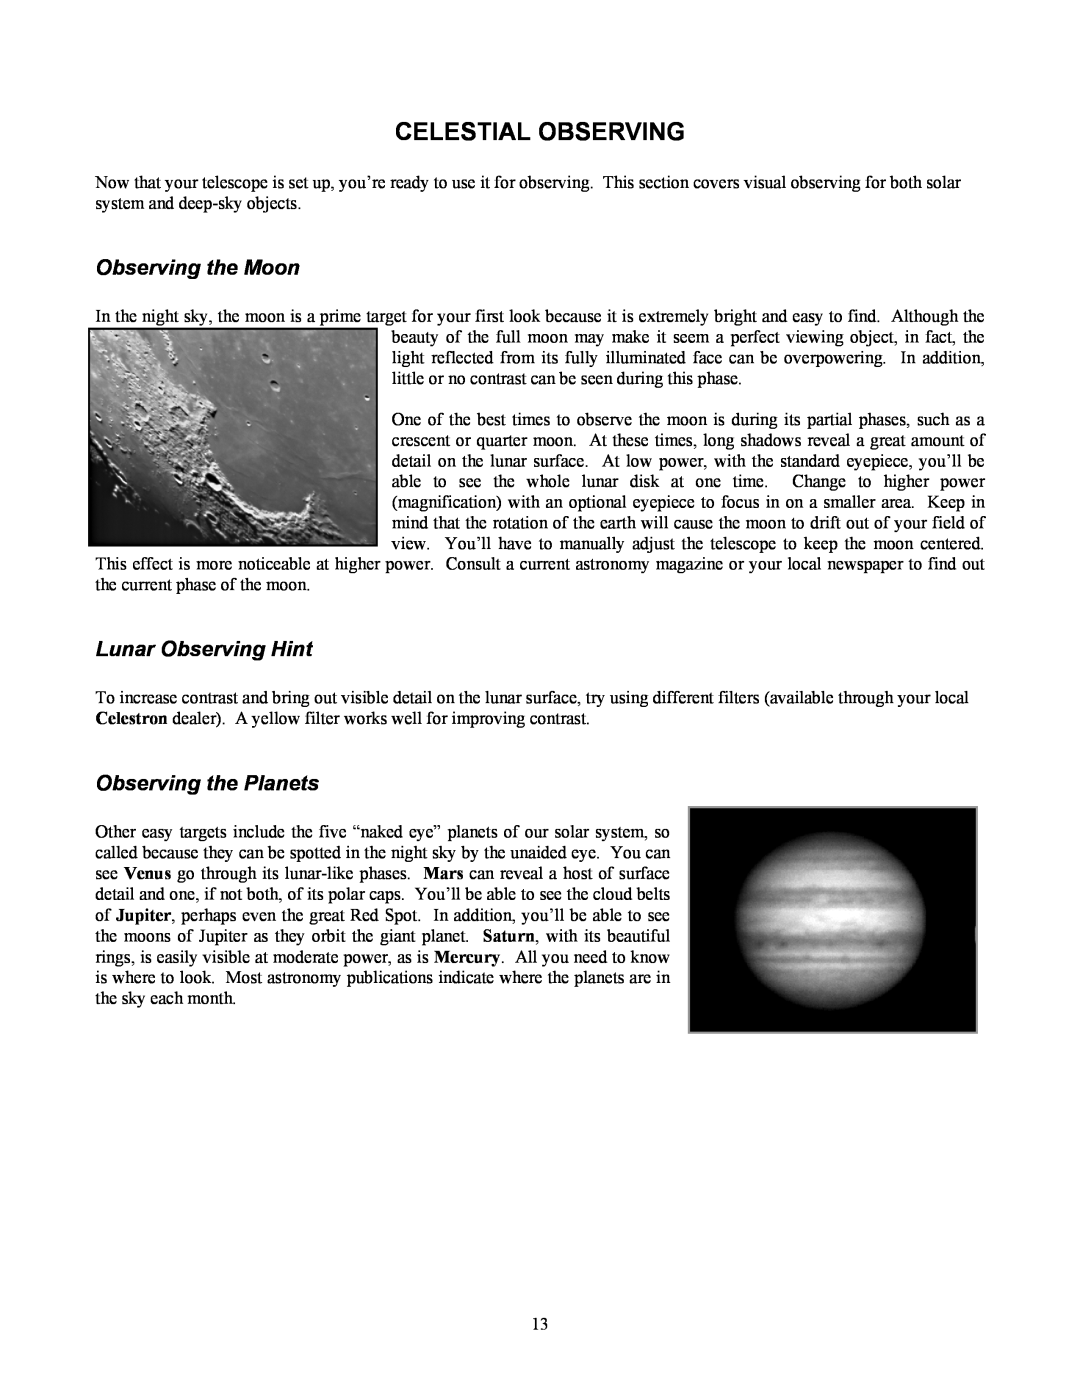 Celestron 70 manual Celestial Observing, Observing the Moon, Lunar Observing Hint, Observing the Planets 